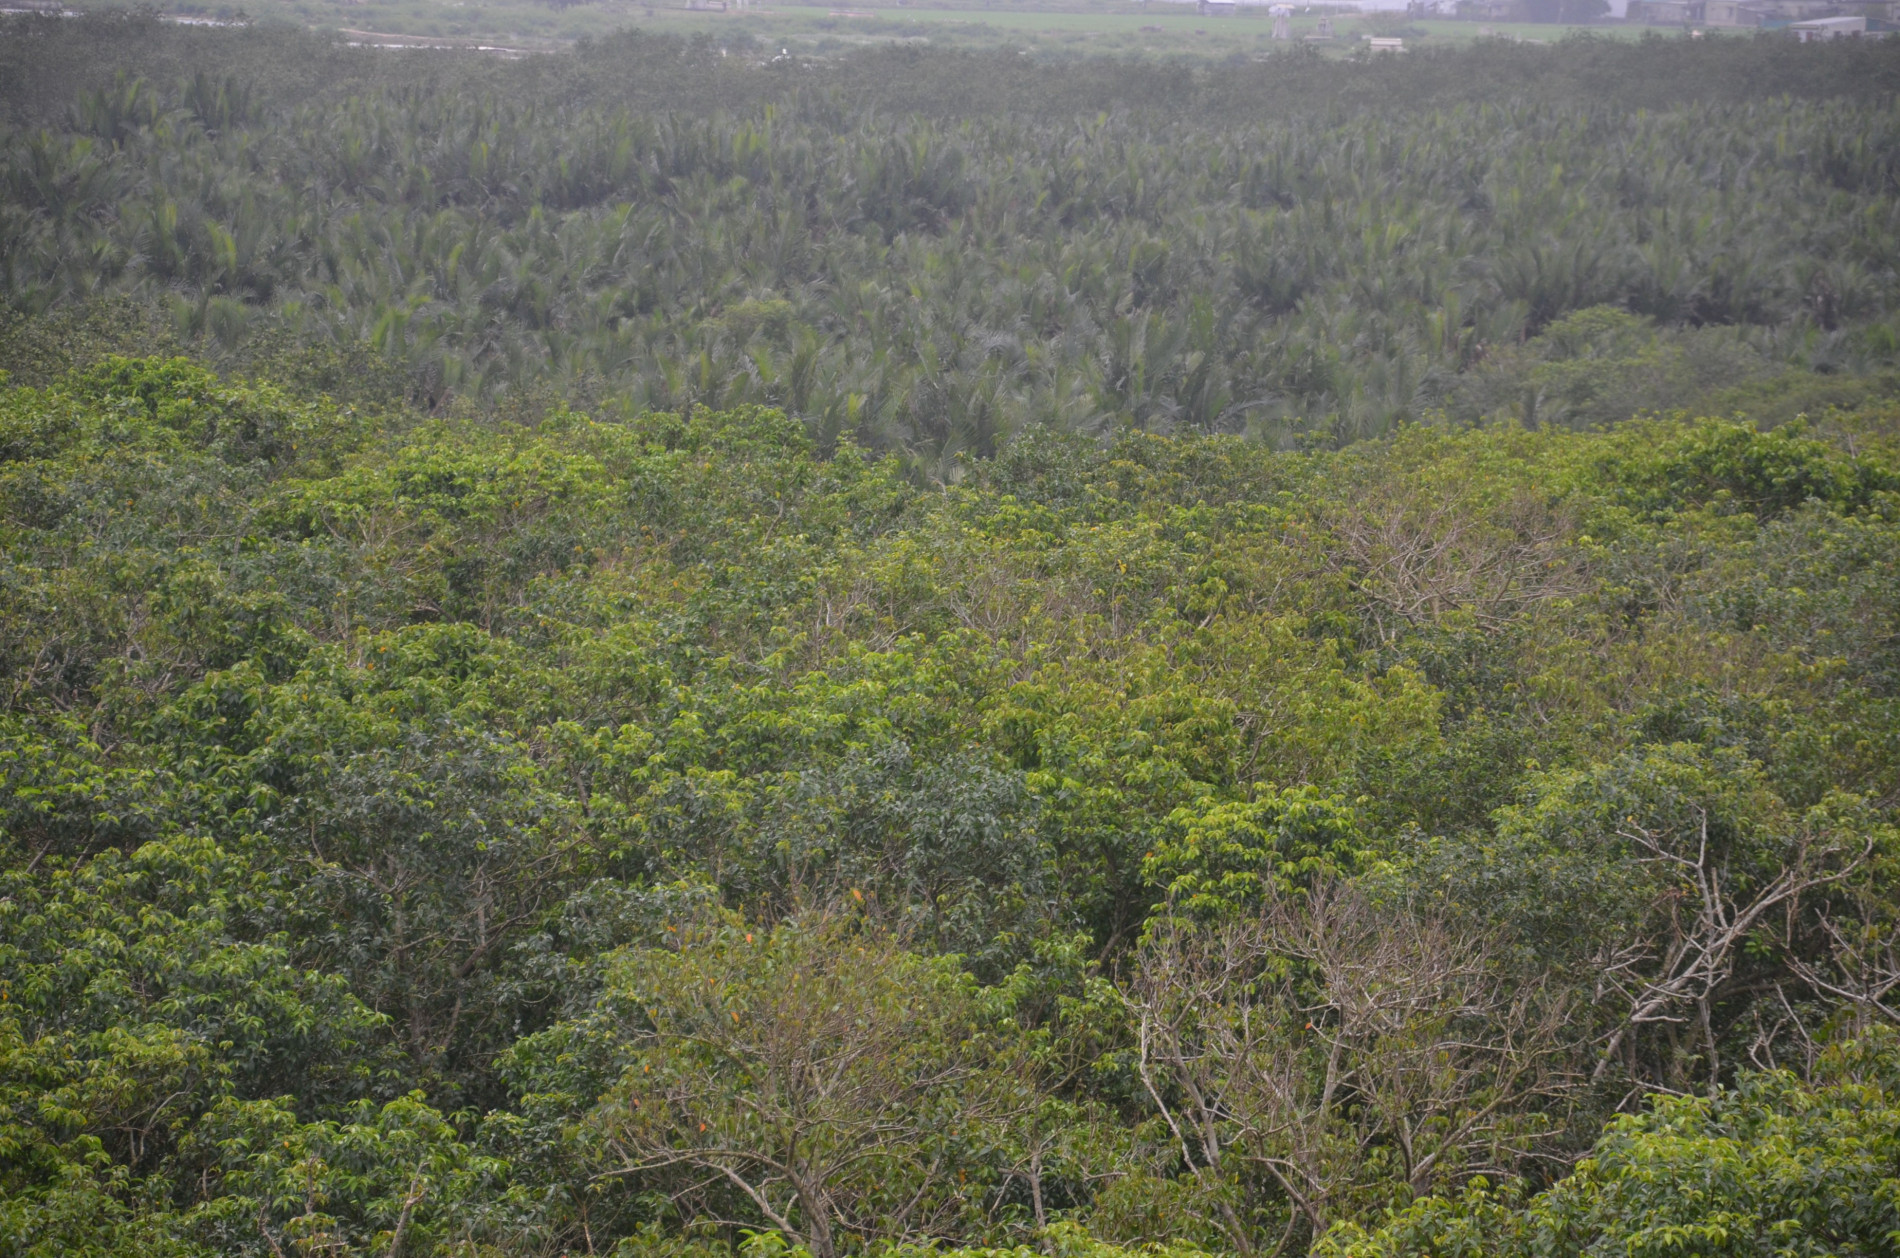 Dân sinh - Du xuân trong những dải rừng ngập mặn được ví như miền Tây ở xứ Huế